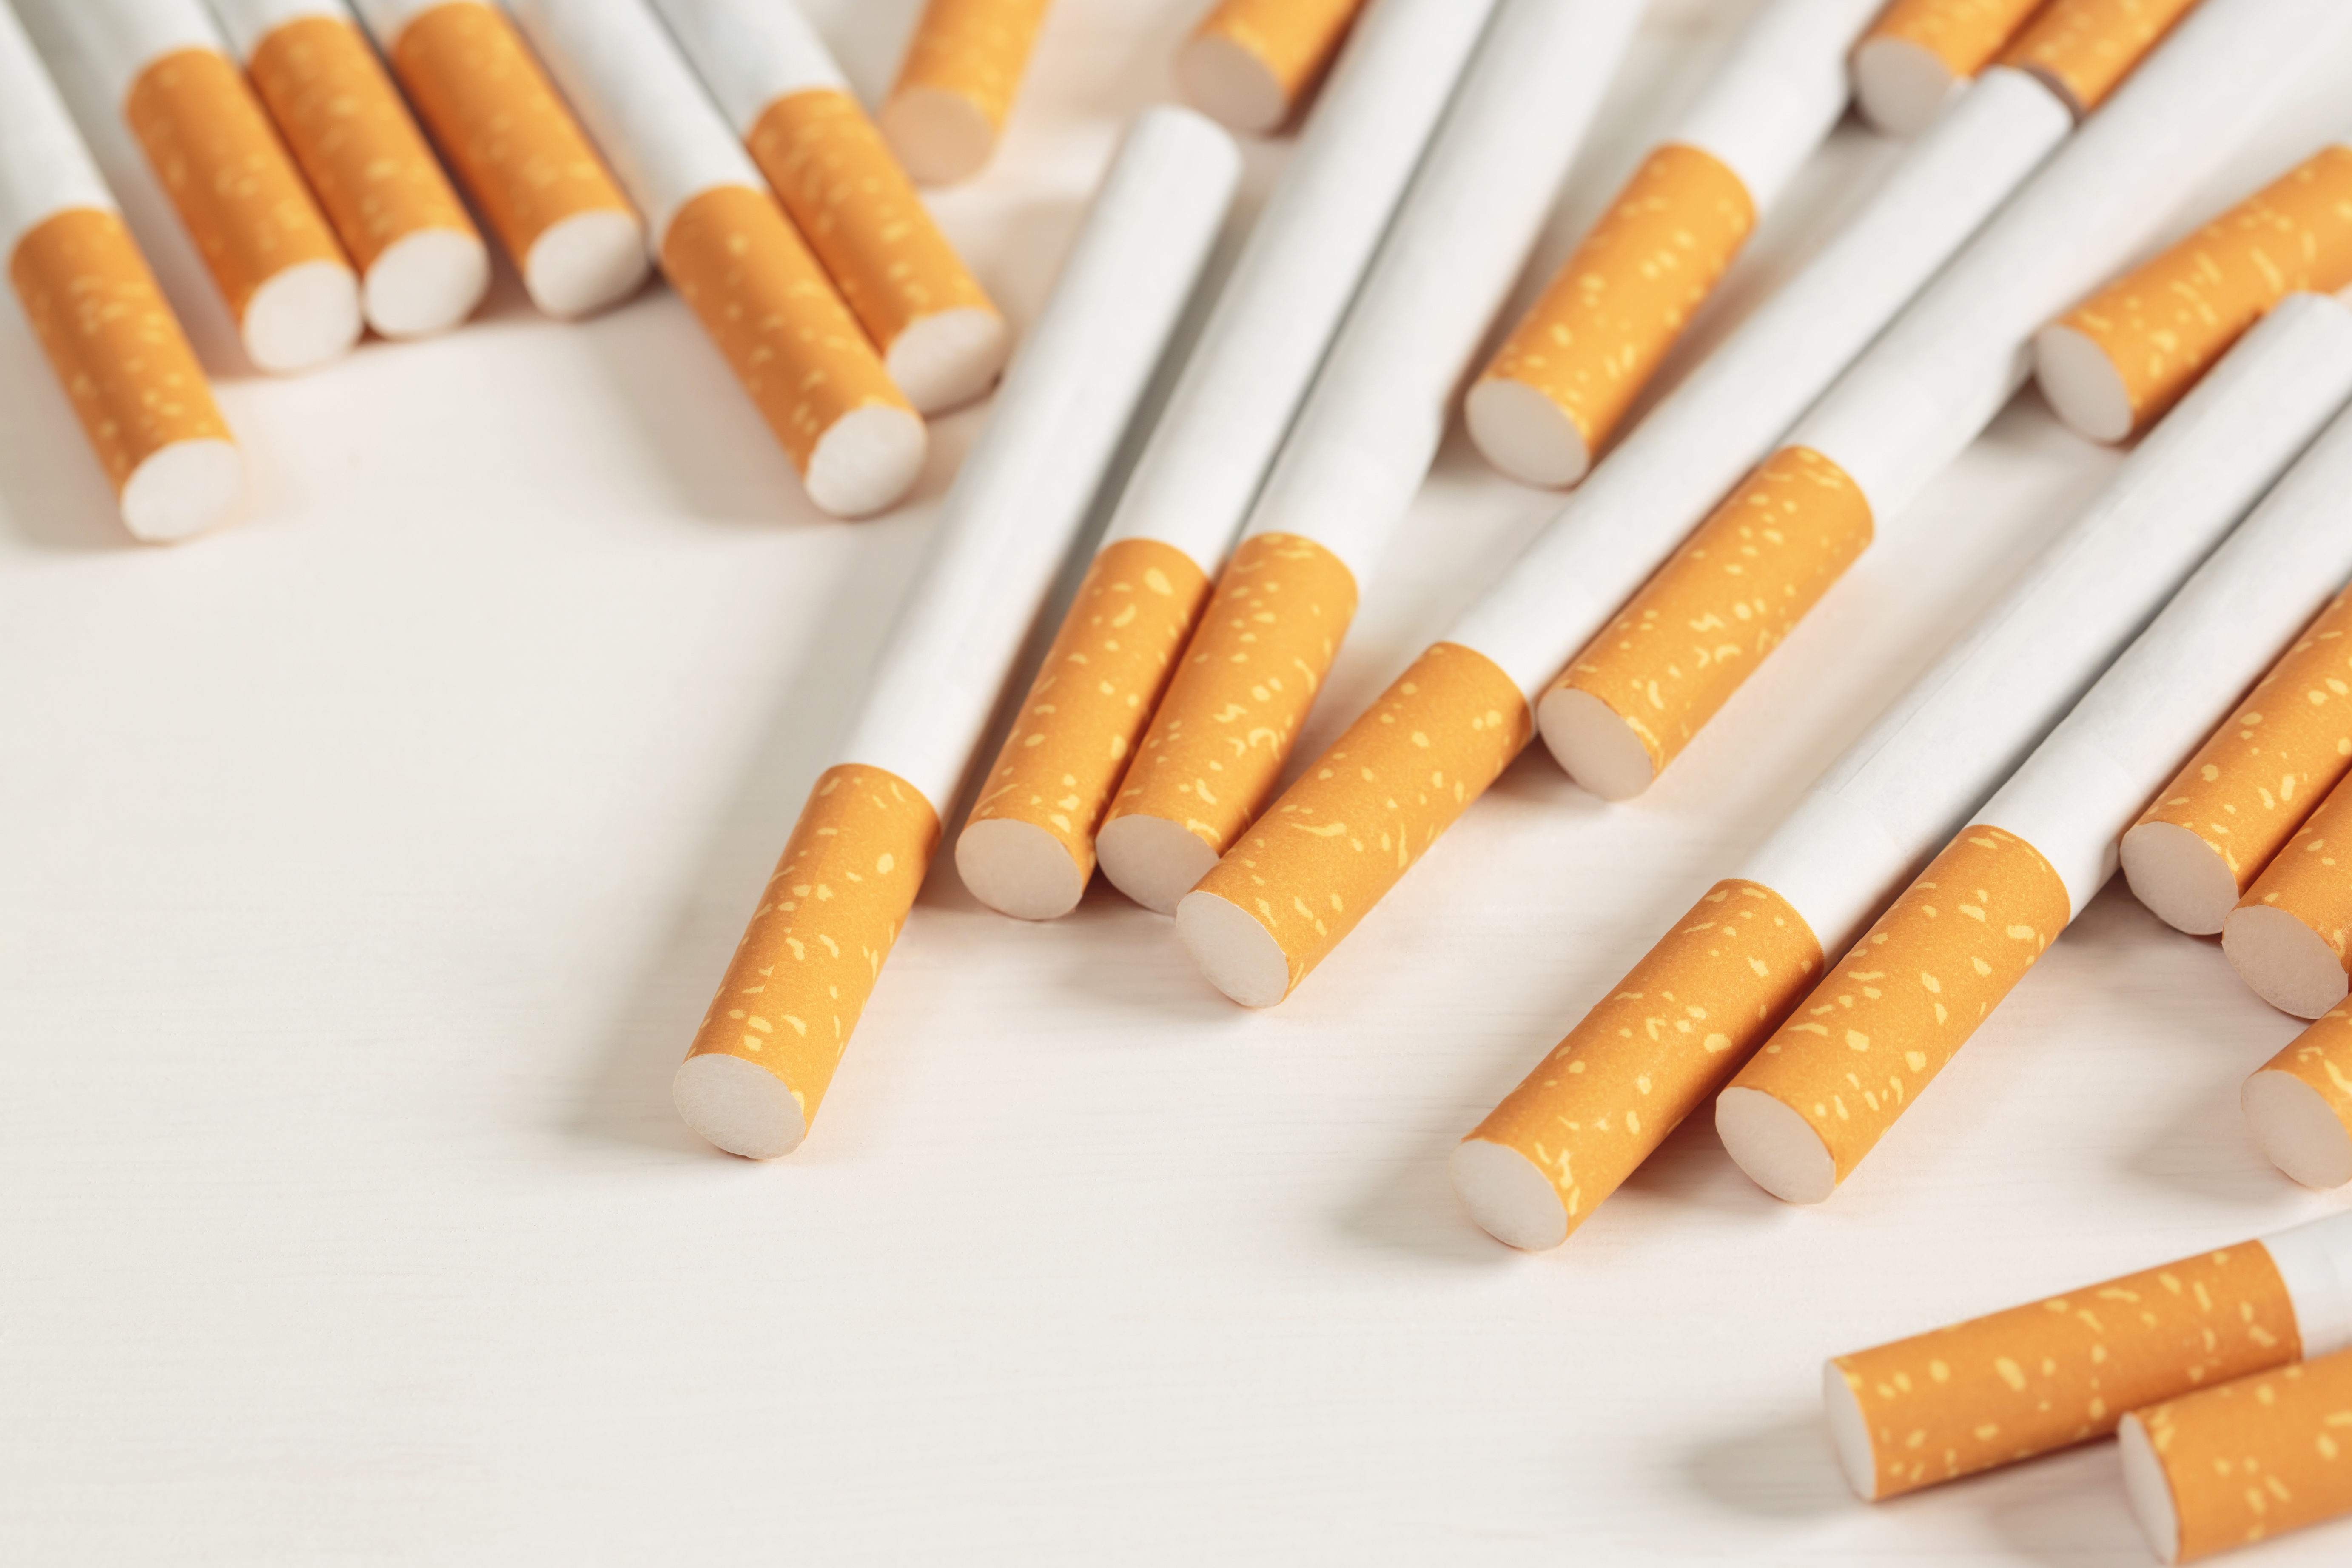 <p><strong>#11</strong><br />
Когато през 50-те години на миналия век се появяват страховете от рак на белия дроб, цигарените компании започват промяна в дизайна на цигарите - от нефилтрирани към филтрирани цигари.&nbsp;Цигарените филтри, направени с променящи цвета си химикали, само създадаават илюзията, че филтрират токсини. В действителност филтрите нямат почти никакъв положителен ефект върху здравето.</p>